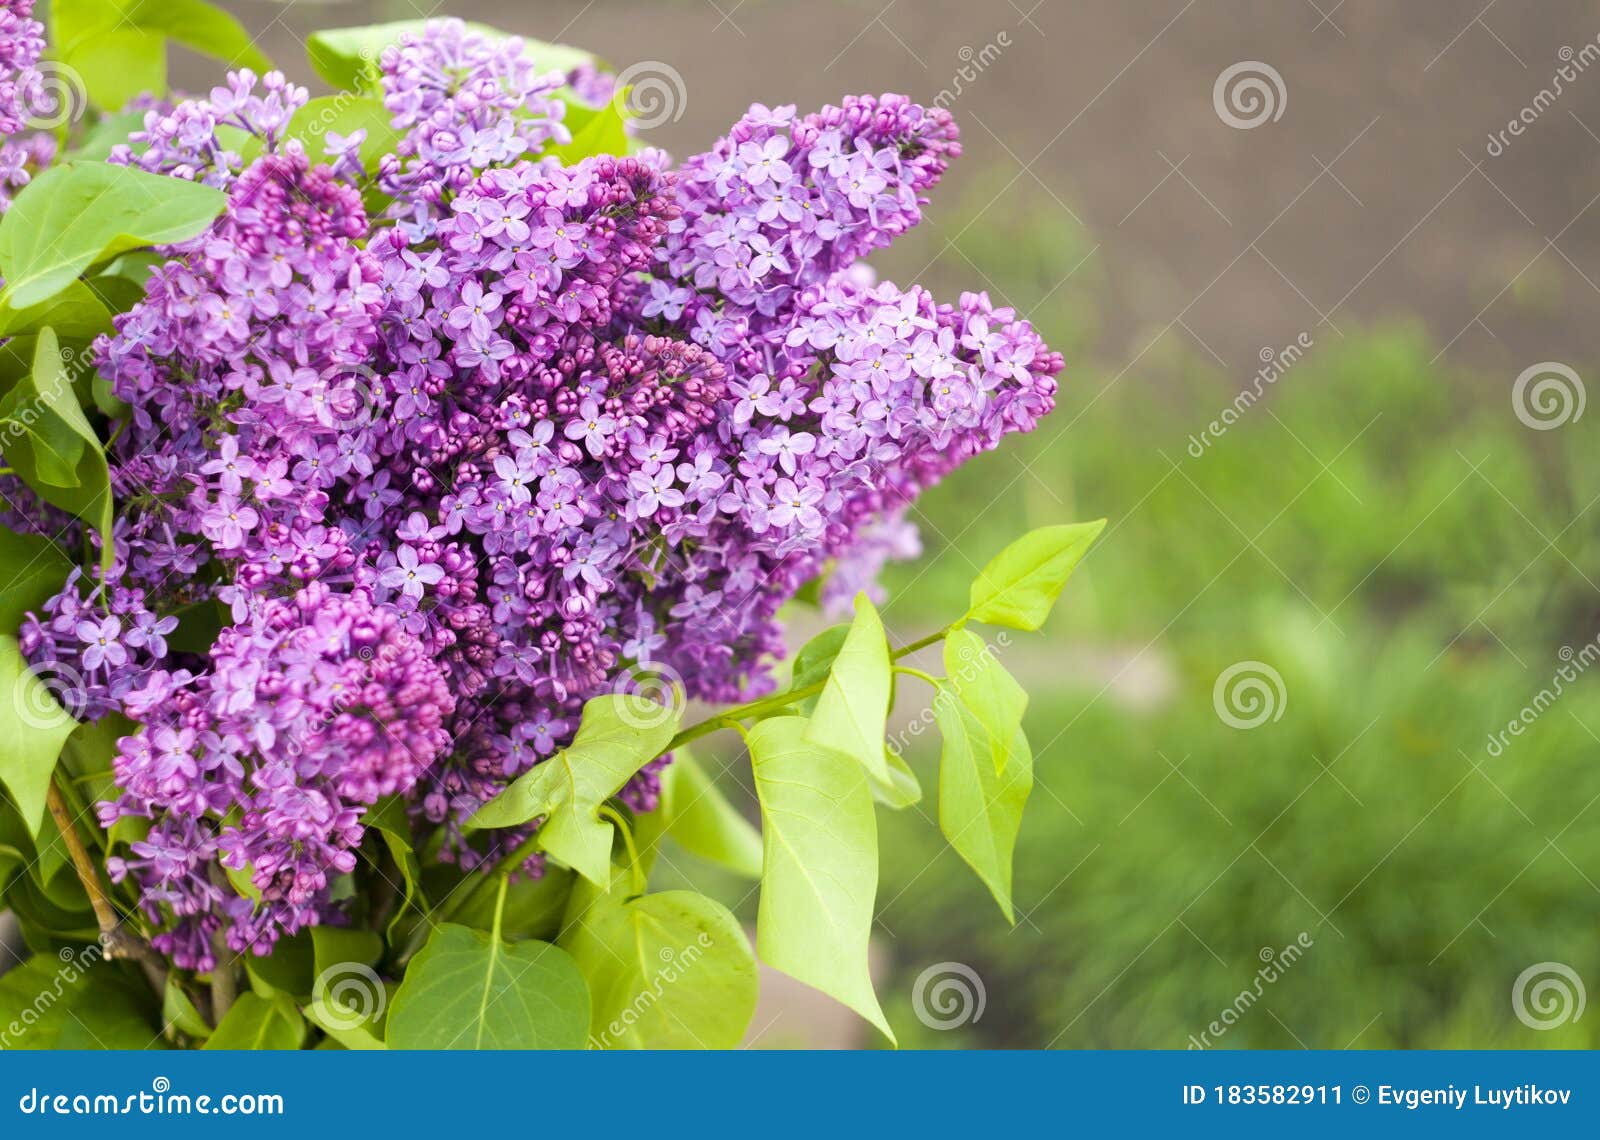 五月丁香库存图片 图片包括有许多 花卉 灌木 艺术性 叶子 开花的 从事园艺 日历